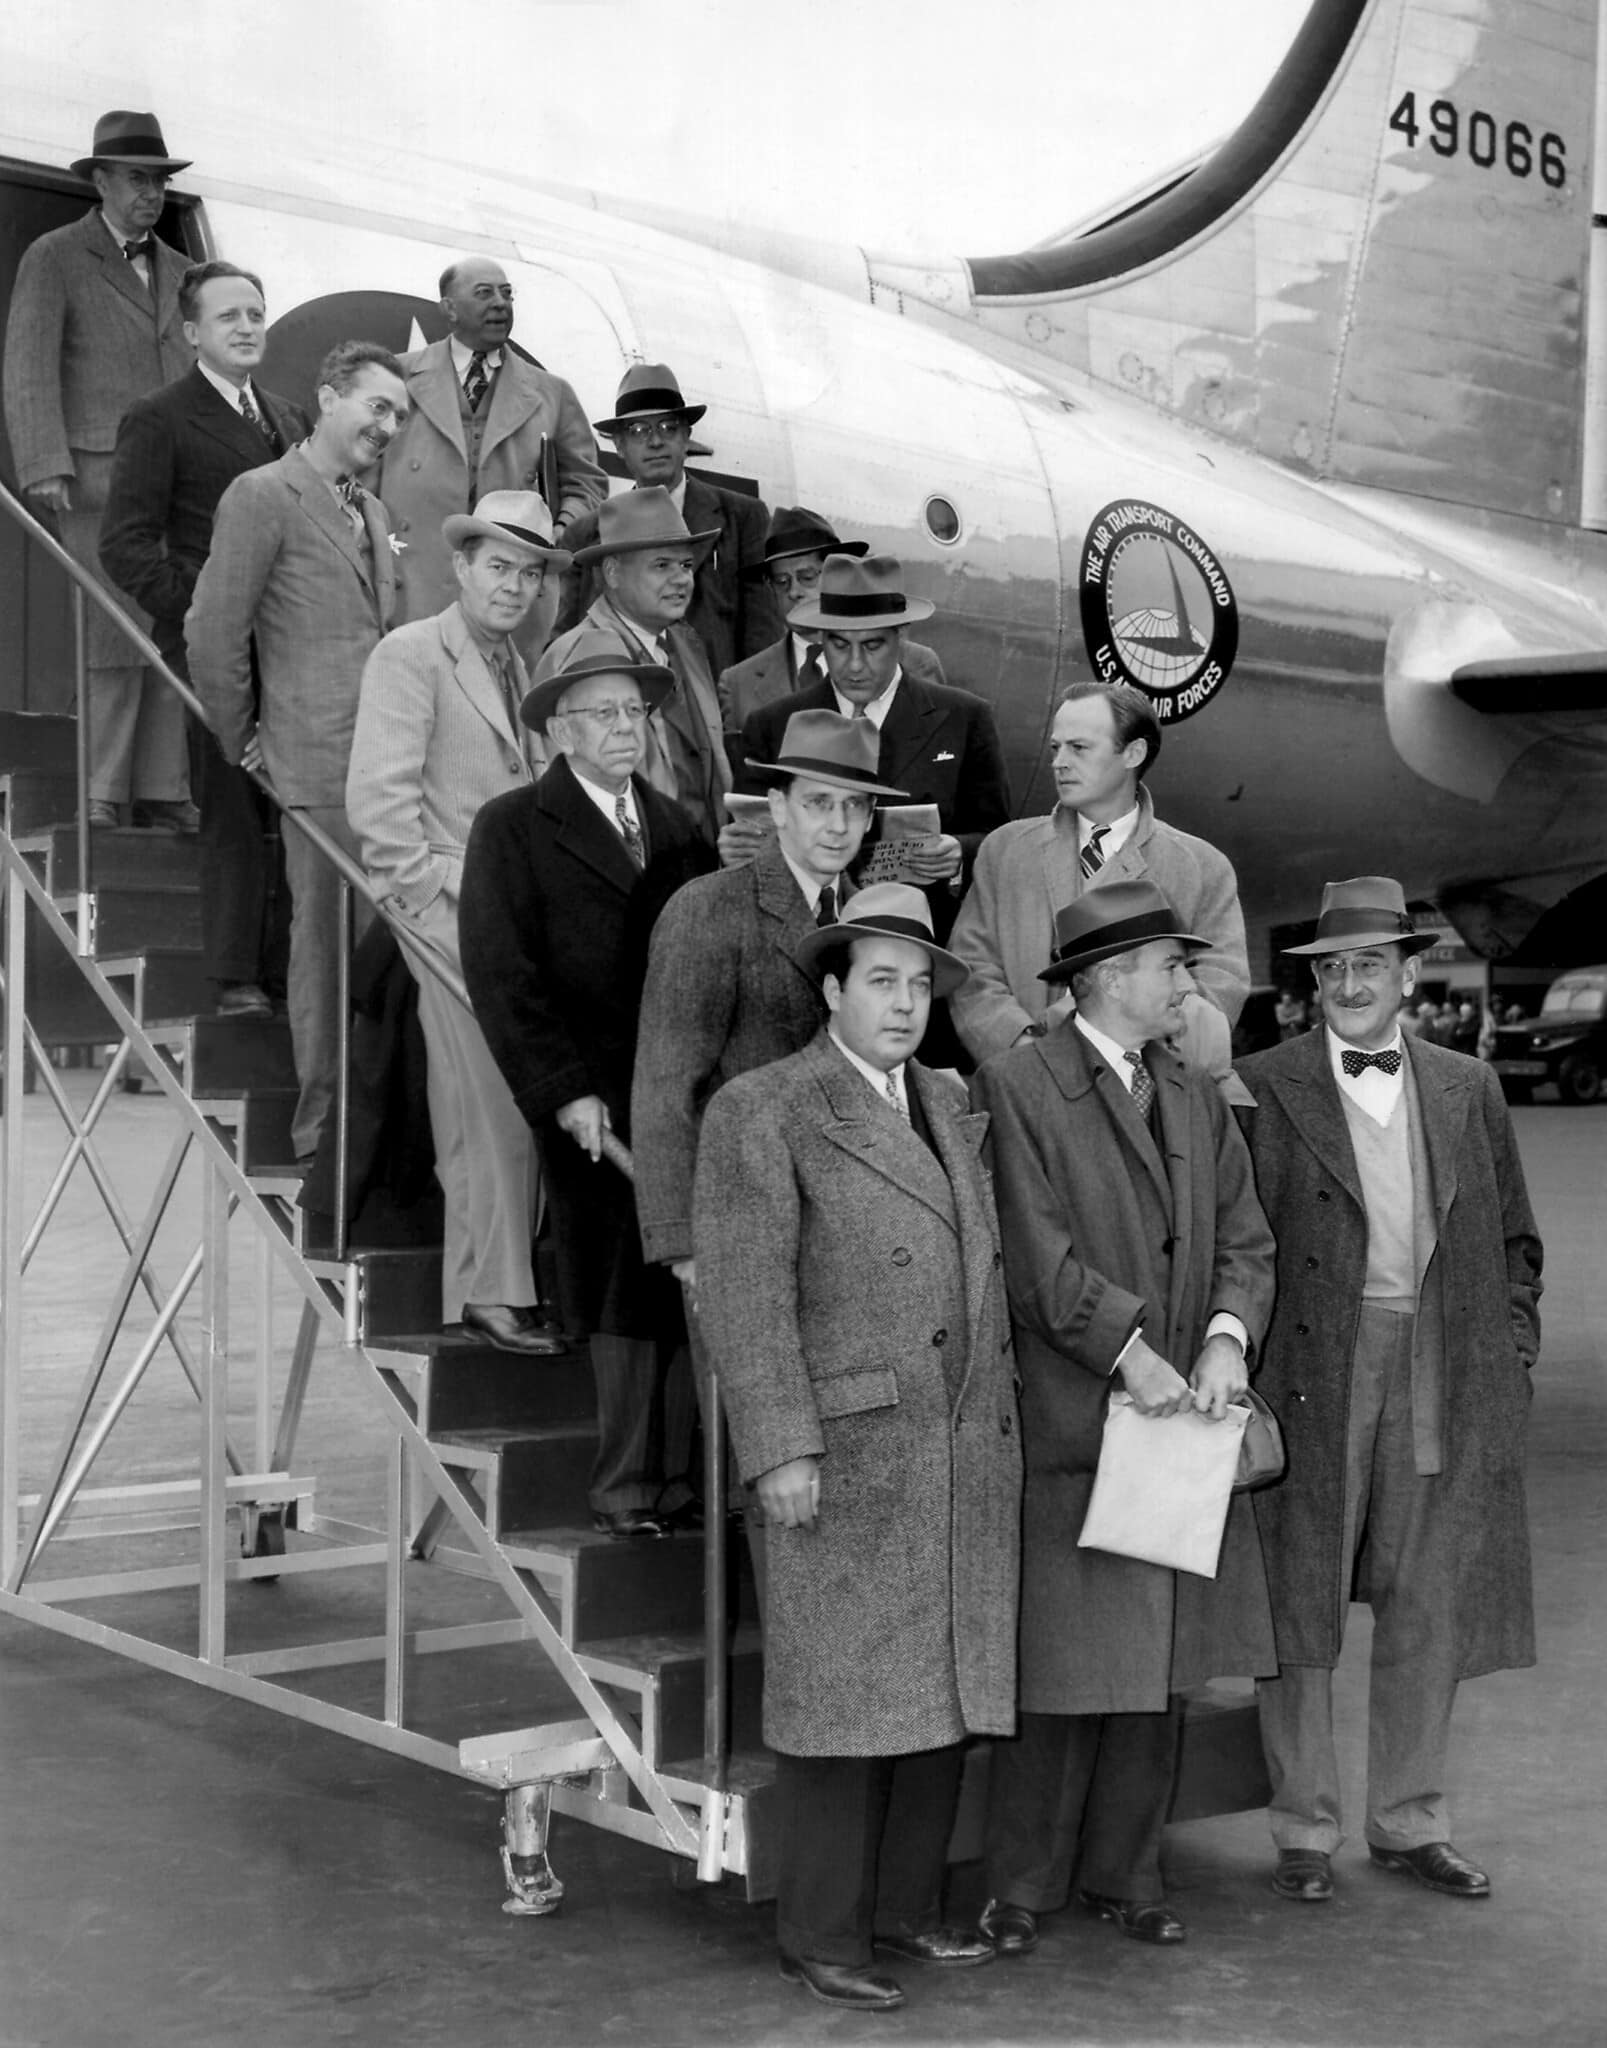 עיתונאים אמריקאים שחזרו מסיור במחנות המאסר הגרמנים. שדה התעופה לה גוורדיה, ניו יורק, 8 במאי 1945 (צילום: AP Photo/KL)